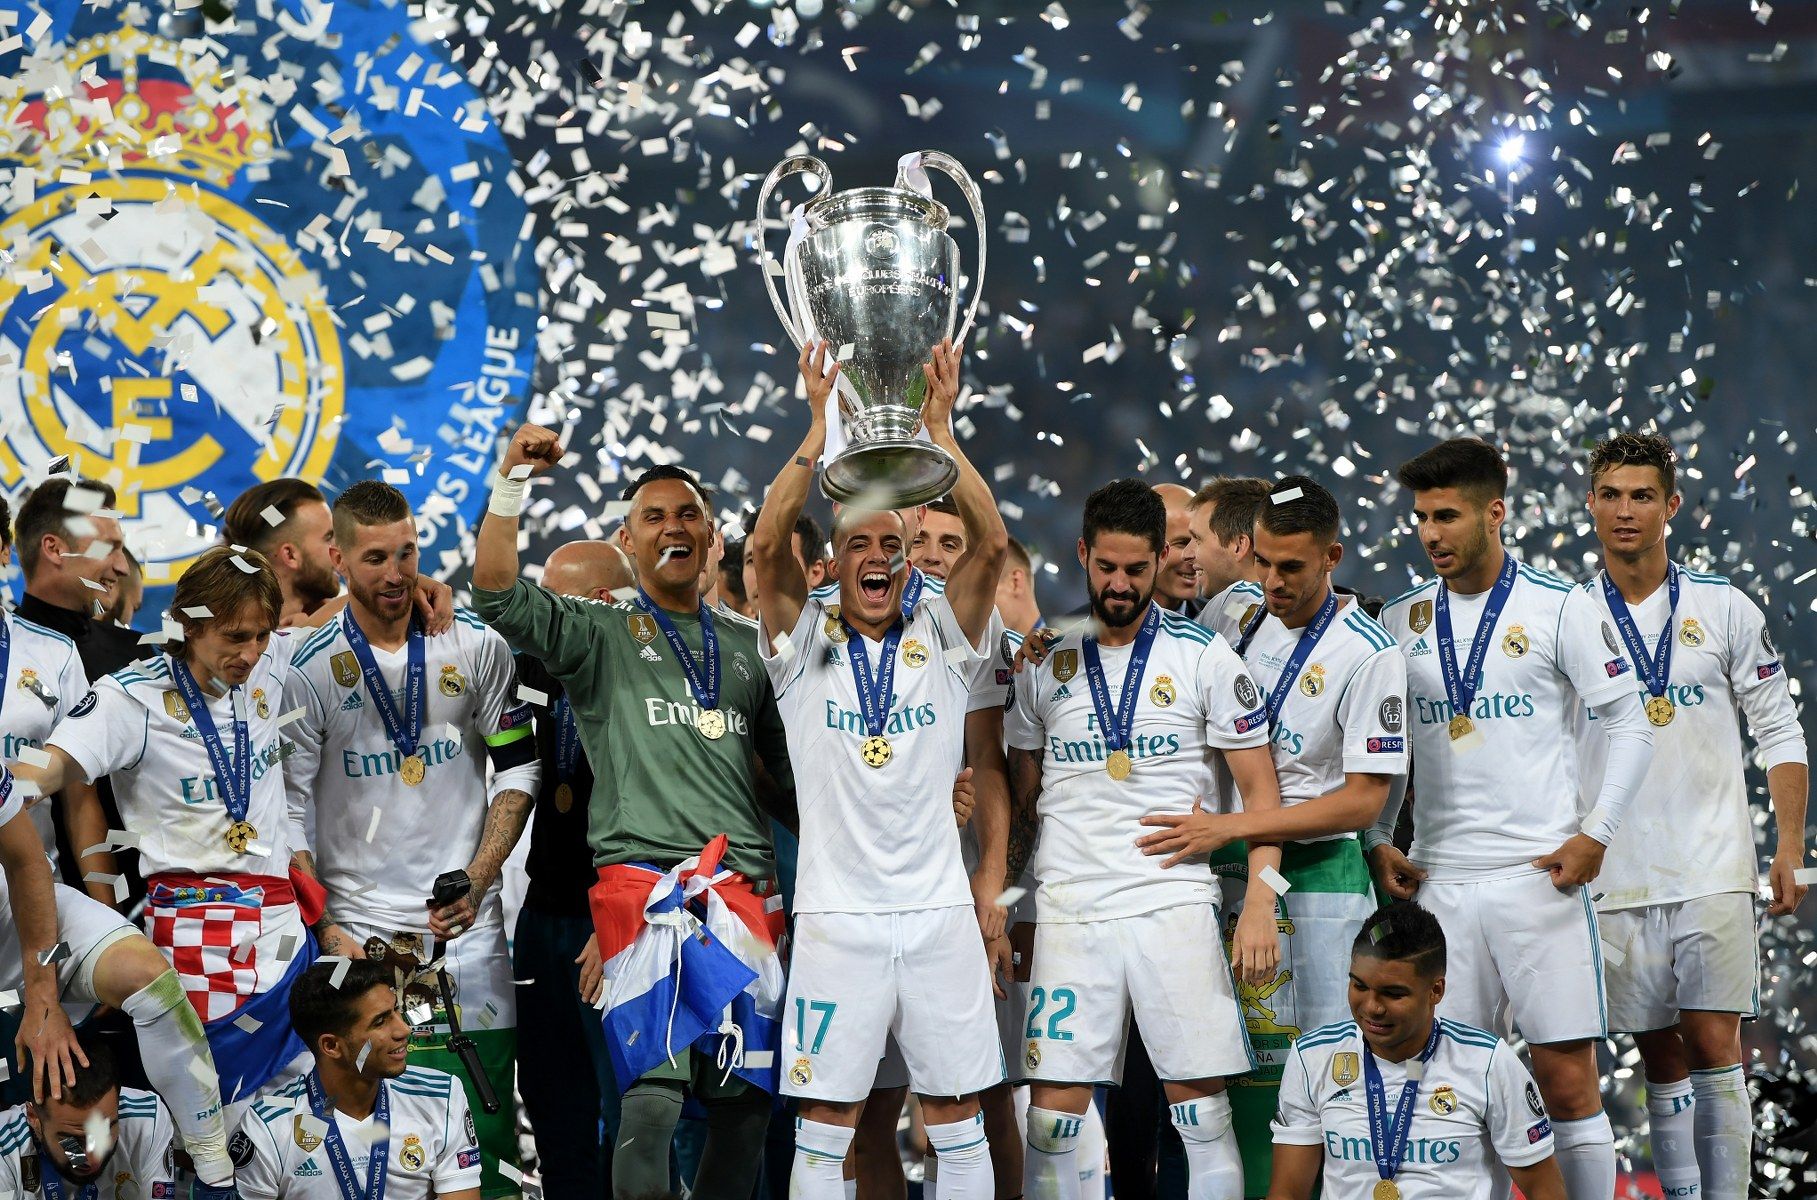 Годините на шампионските триумфи: 1956, 1957, 1958, 1959, 1960, 1966, 1998, 2000, 2002, 2014, 2016, 2017 и 2018-а. Купите на УЕФА са две - през 1985 и 1986 г., Суперкупите са четири (2002, 2014, 2016 и 2017 г.), а световните титли - три (1960, 1998 и 2002 г.). Грандът на грандовете - това е "Реал" (Мадрид)!